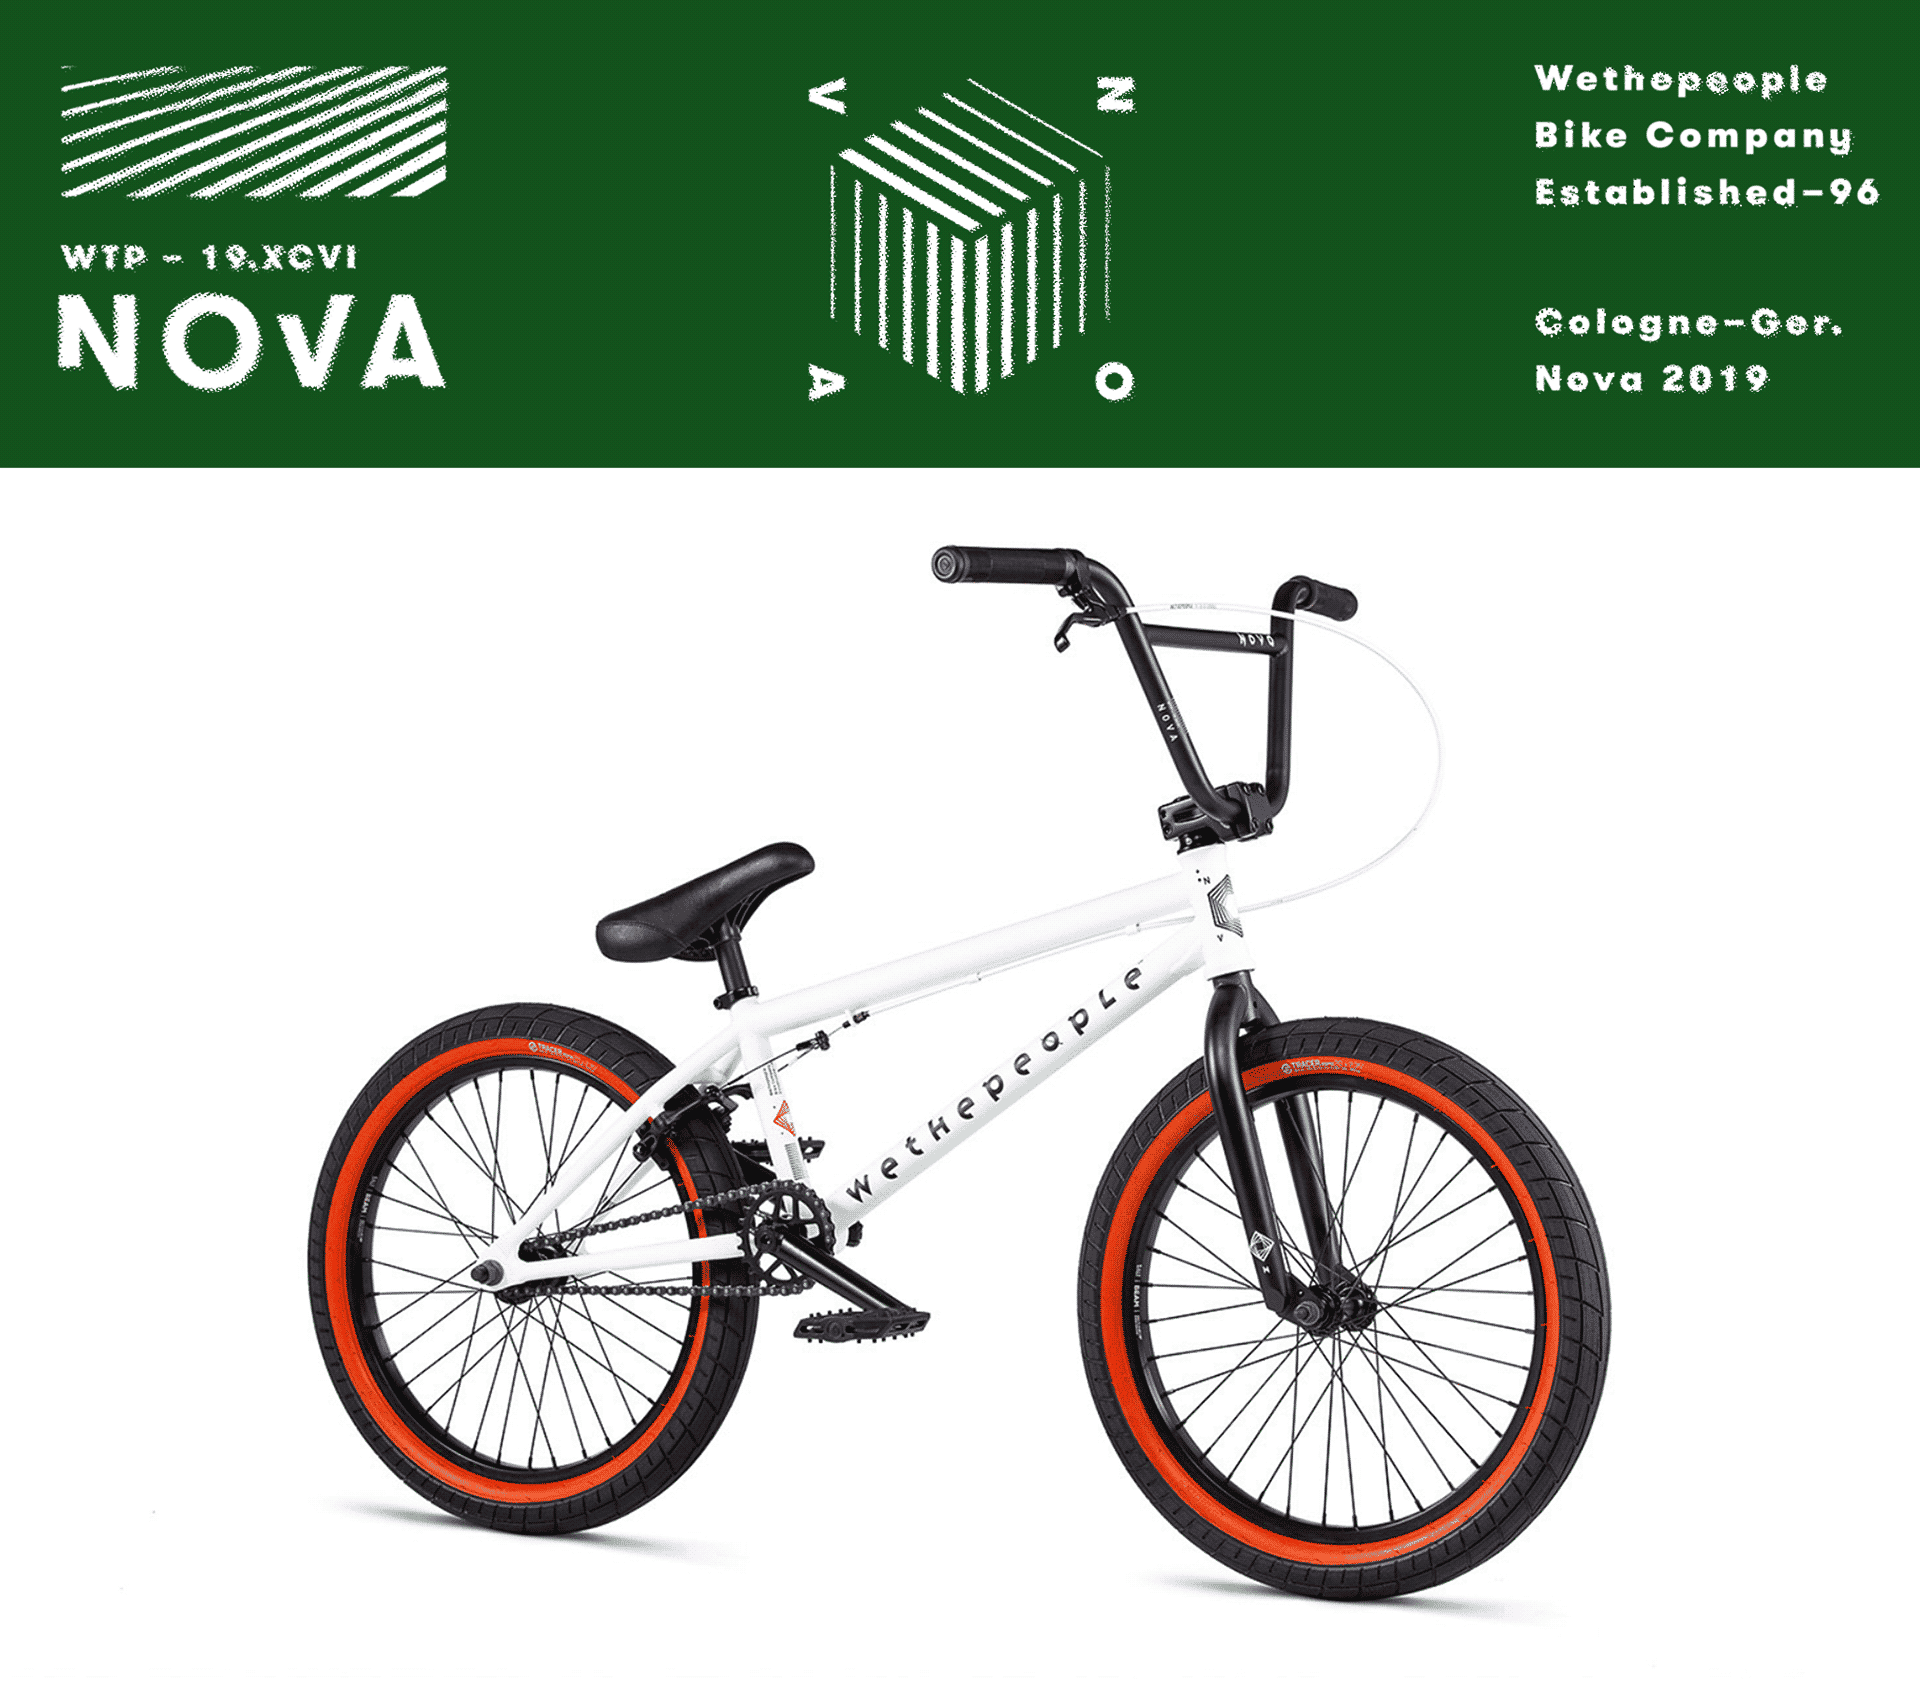 Ein Bild des WTP Nova 2020 Bikes